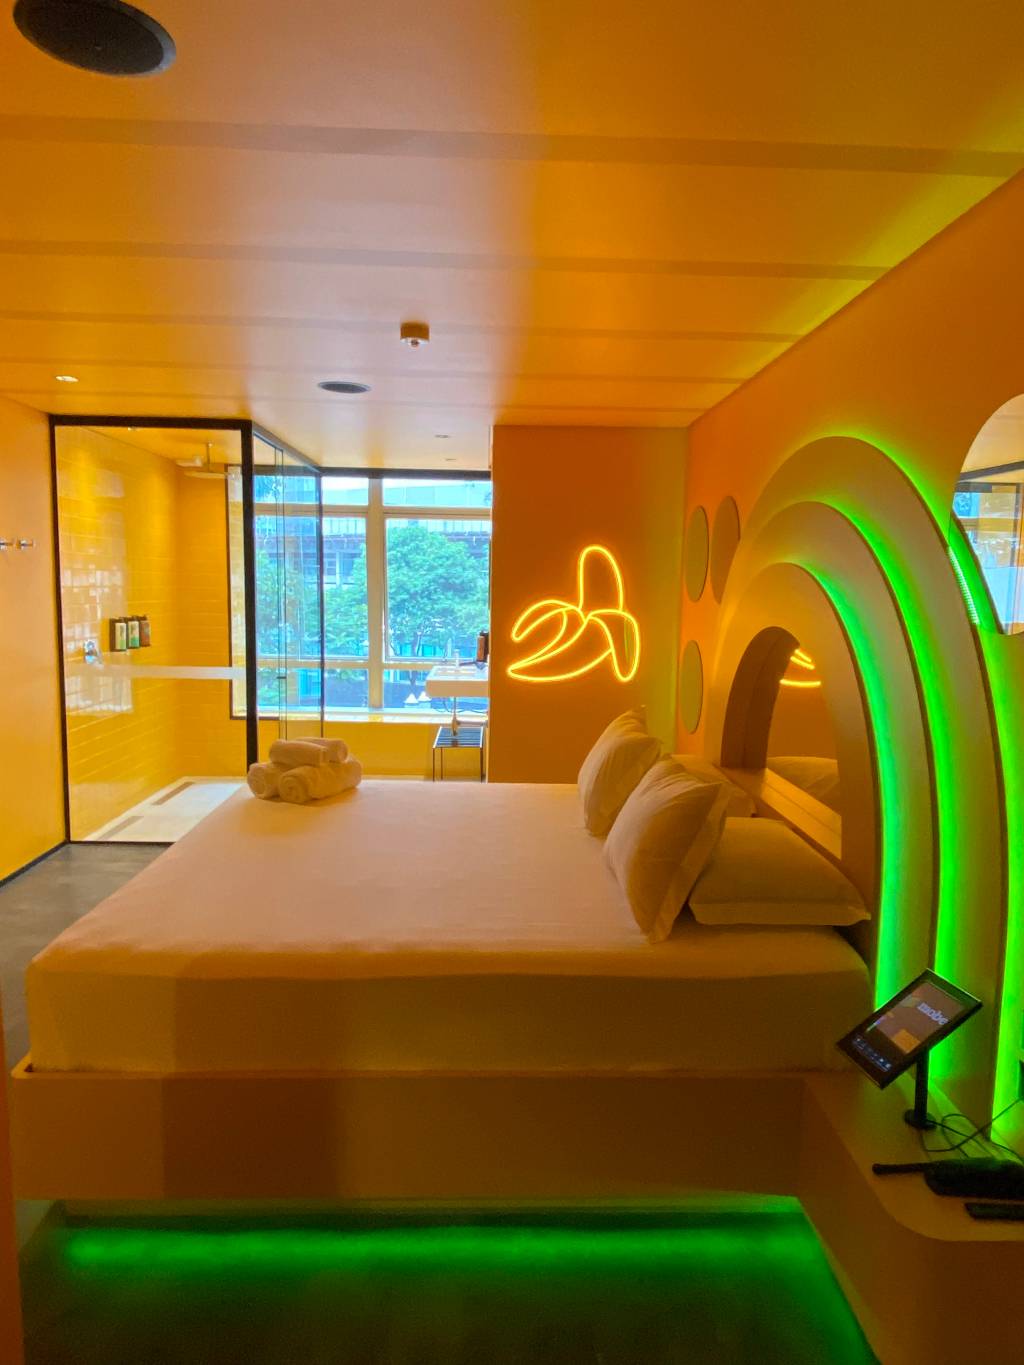 Imagem de quarto de motel em tom amarelo e repleto de luzes neon, com cama de casal e chuveiro com janela ao fundo. Uma das paredes tem um neon em formato de banana.